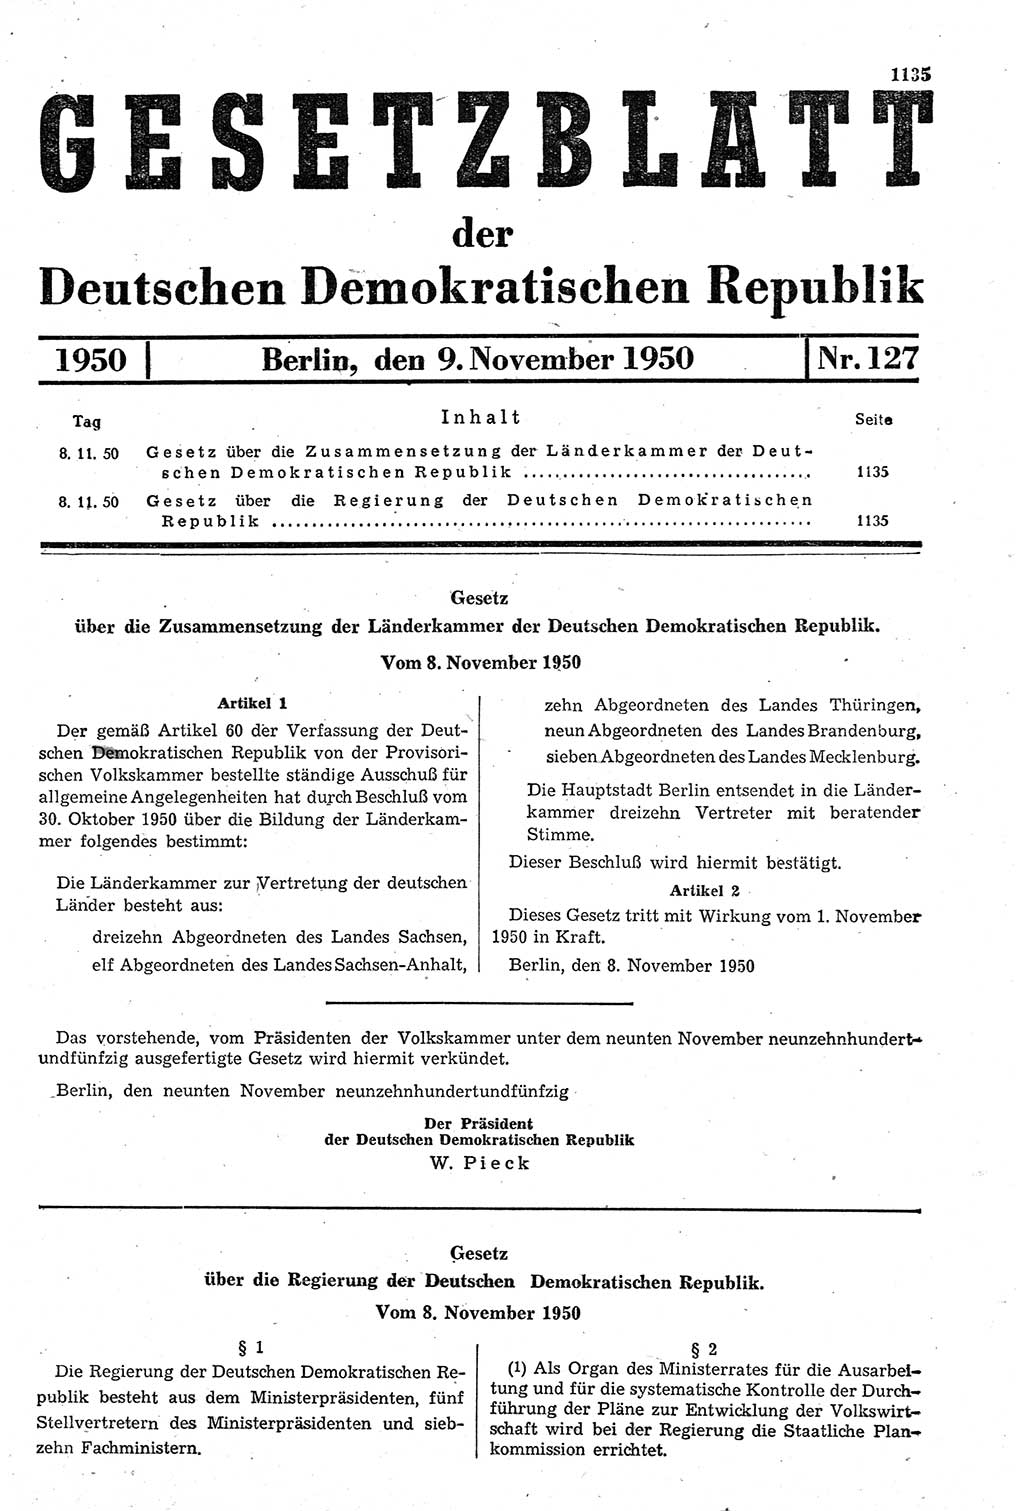 Gesetzblatt (GBl.) der Deutschen Demokratischen Republik (DDR) 1950, Seite 1135 (GBl. DDR 1950, S. 1135)